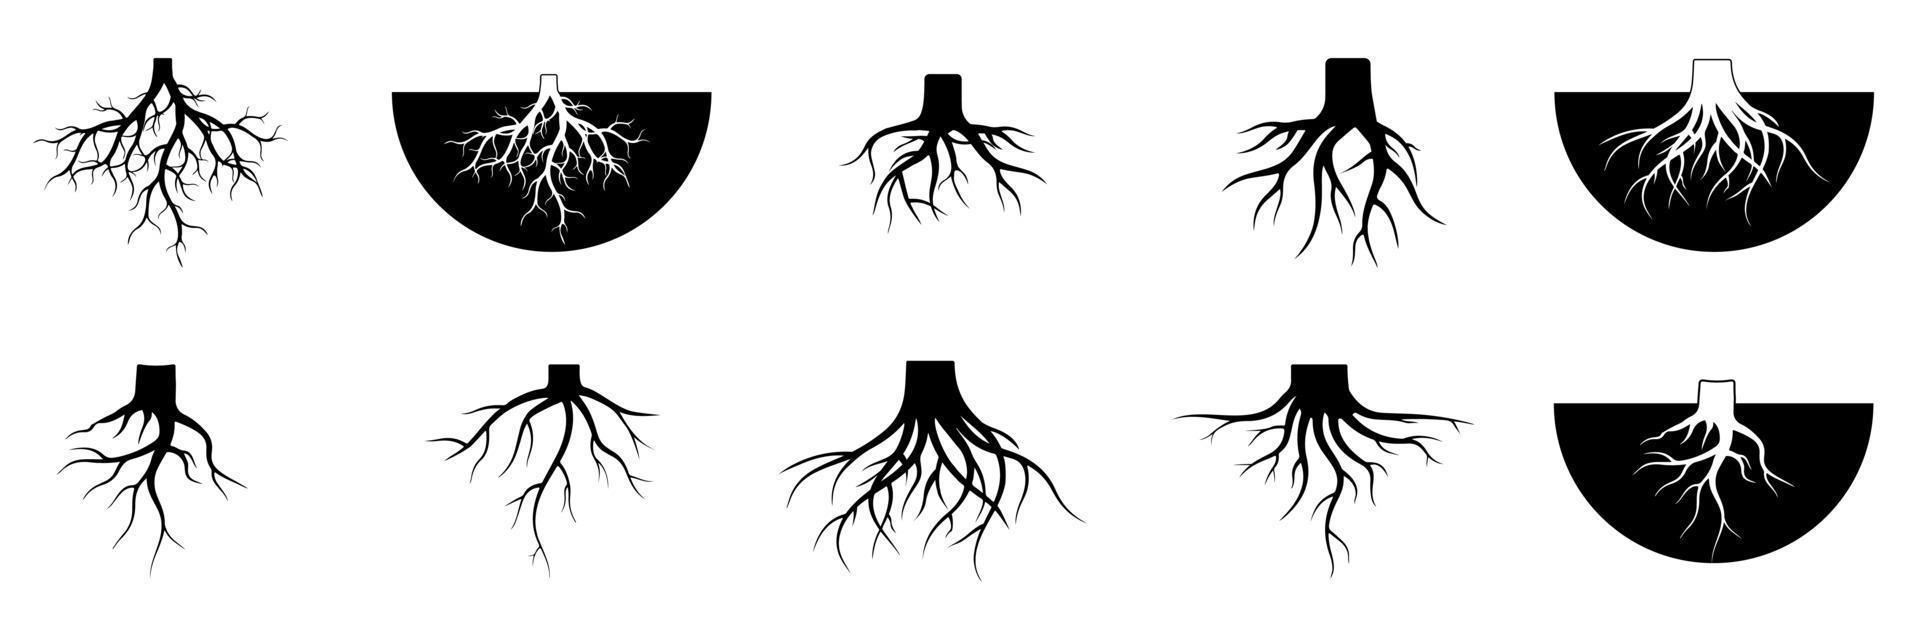 ilustrações de conjunto de vetores de raízes de árvores